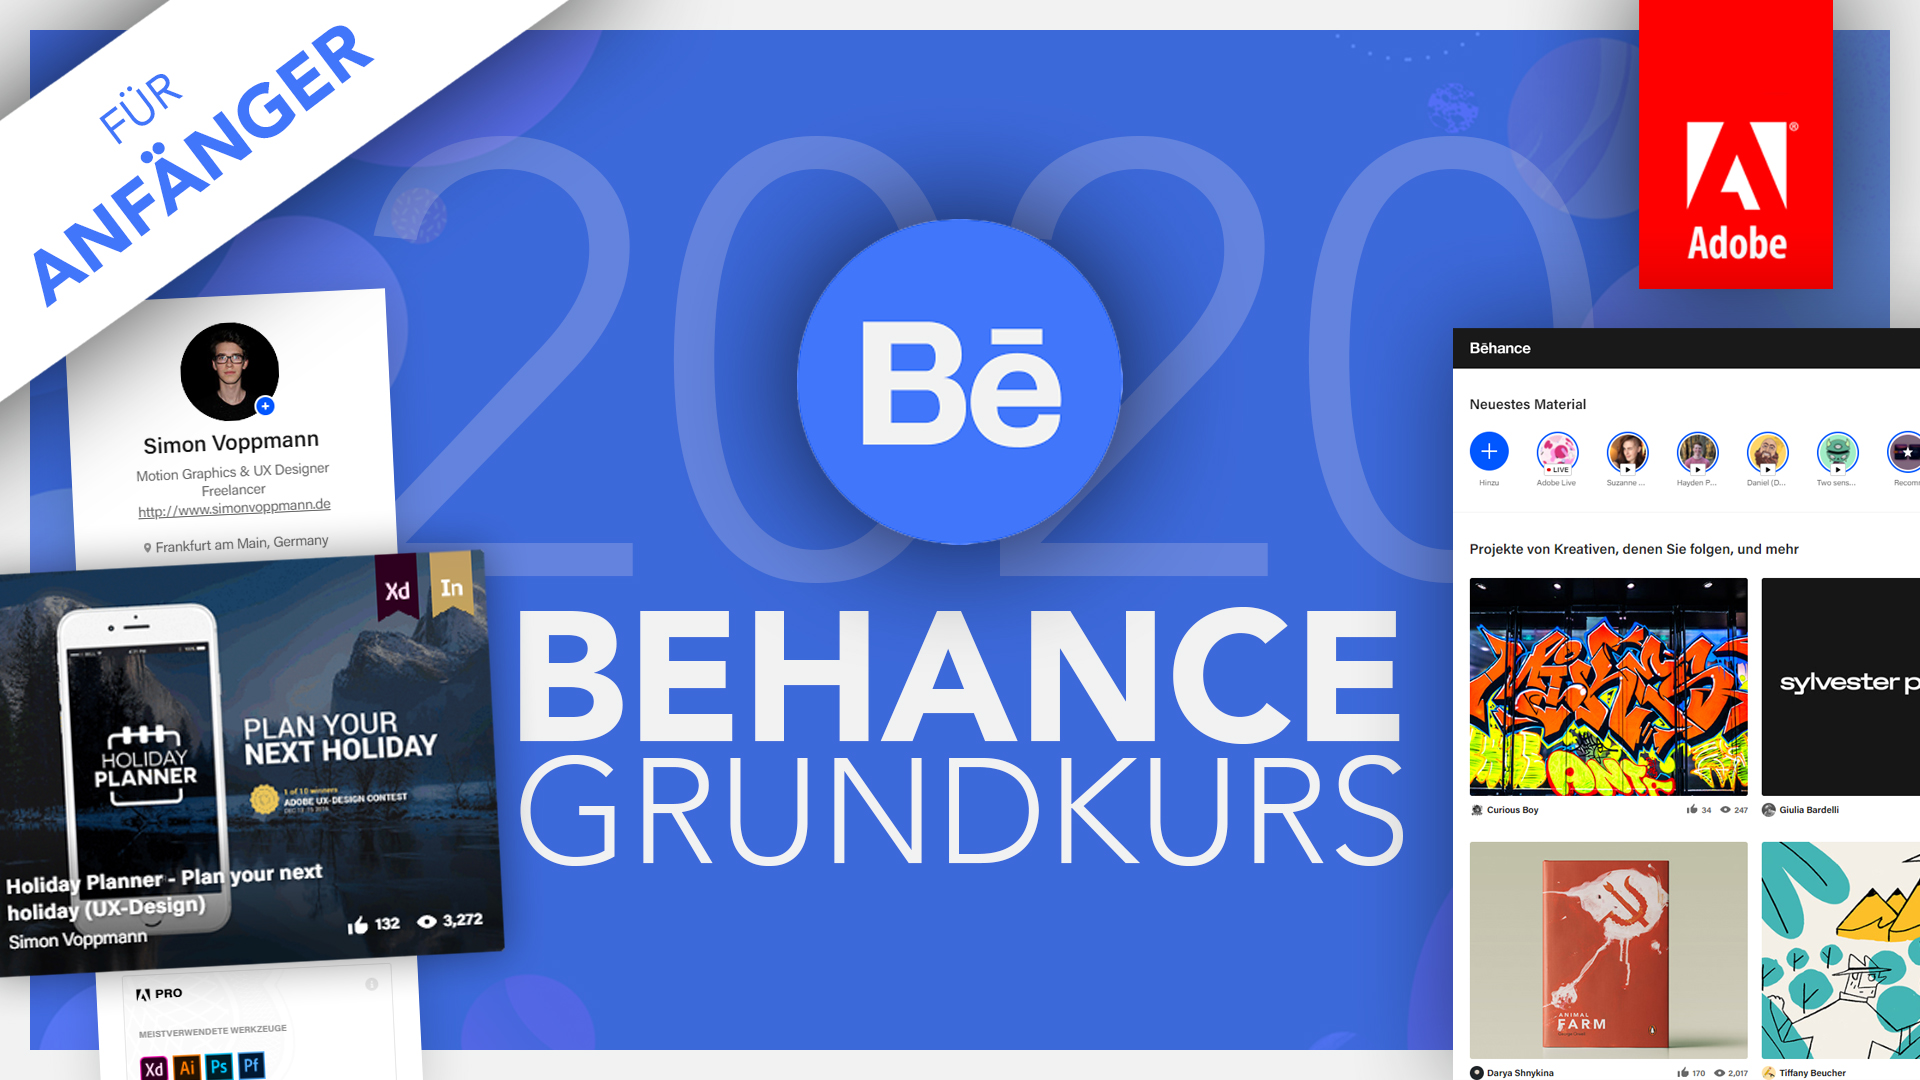 Behance (Grundkurs für Anfänger) Deutsch (Tutorial)